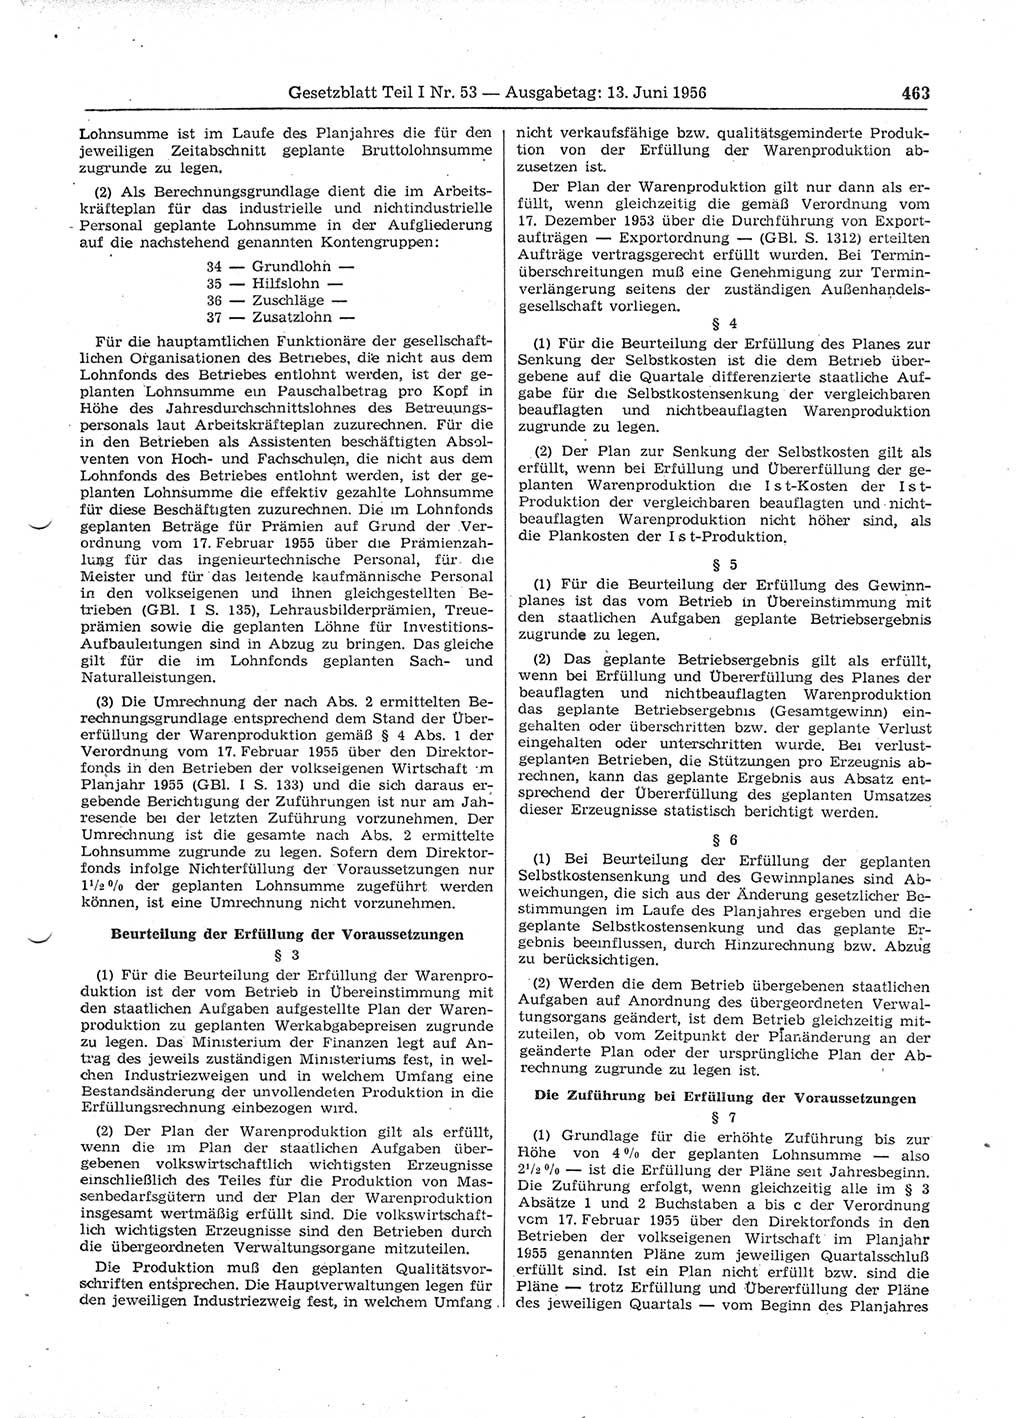 Gesetzblatt (GBl.) der Deutschen Demokratischen Republik (DDR) Teil Ⅰ 1956, Seite 463 (GBl. DDR Ⅰ 1956, S. 463)